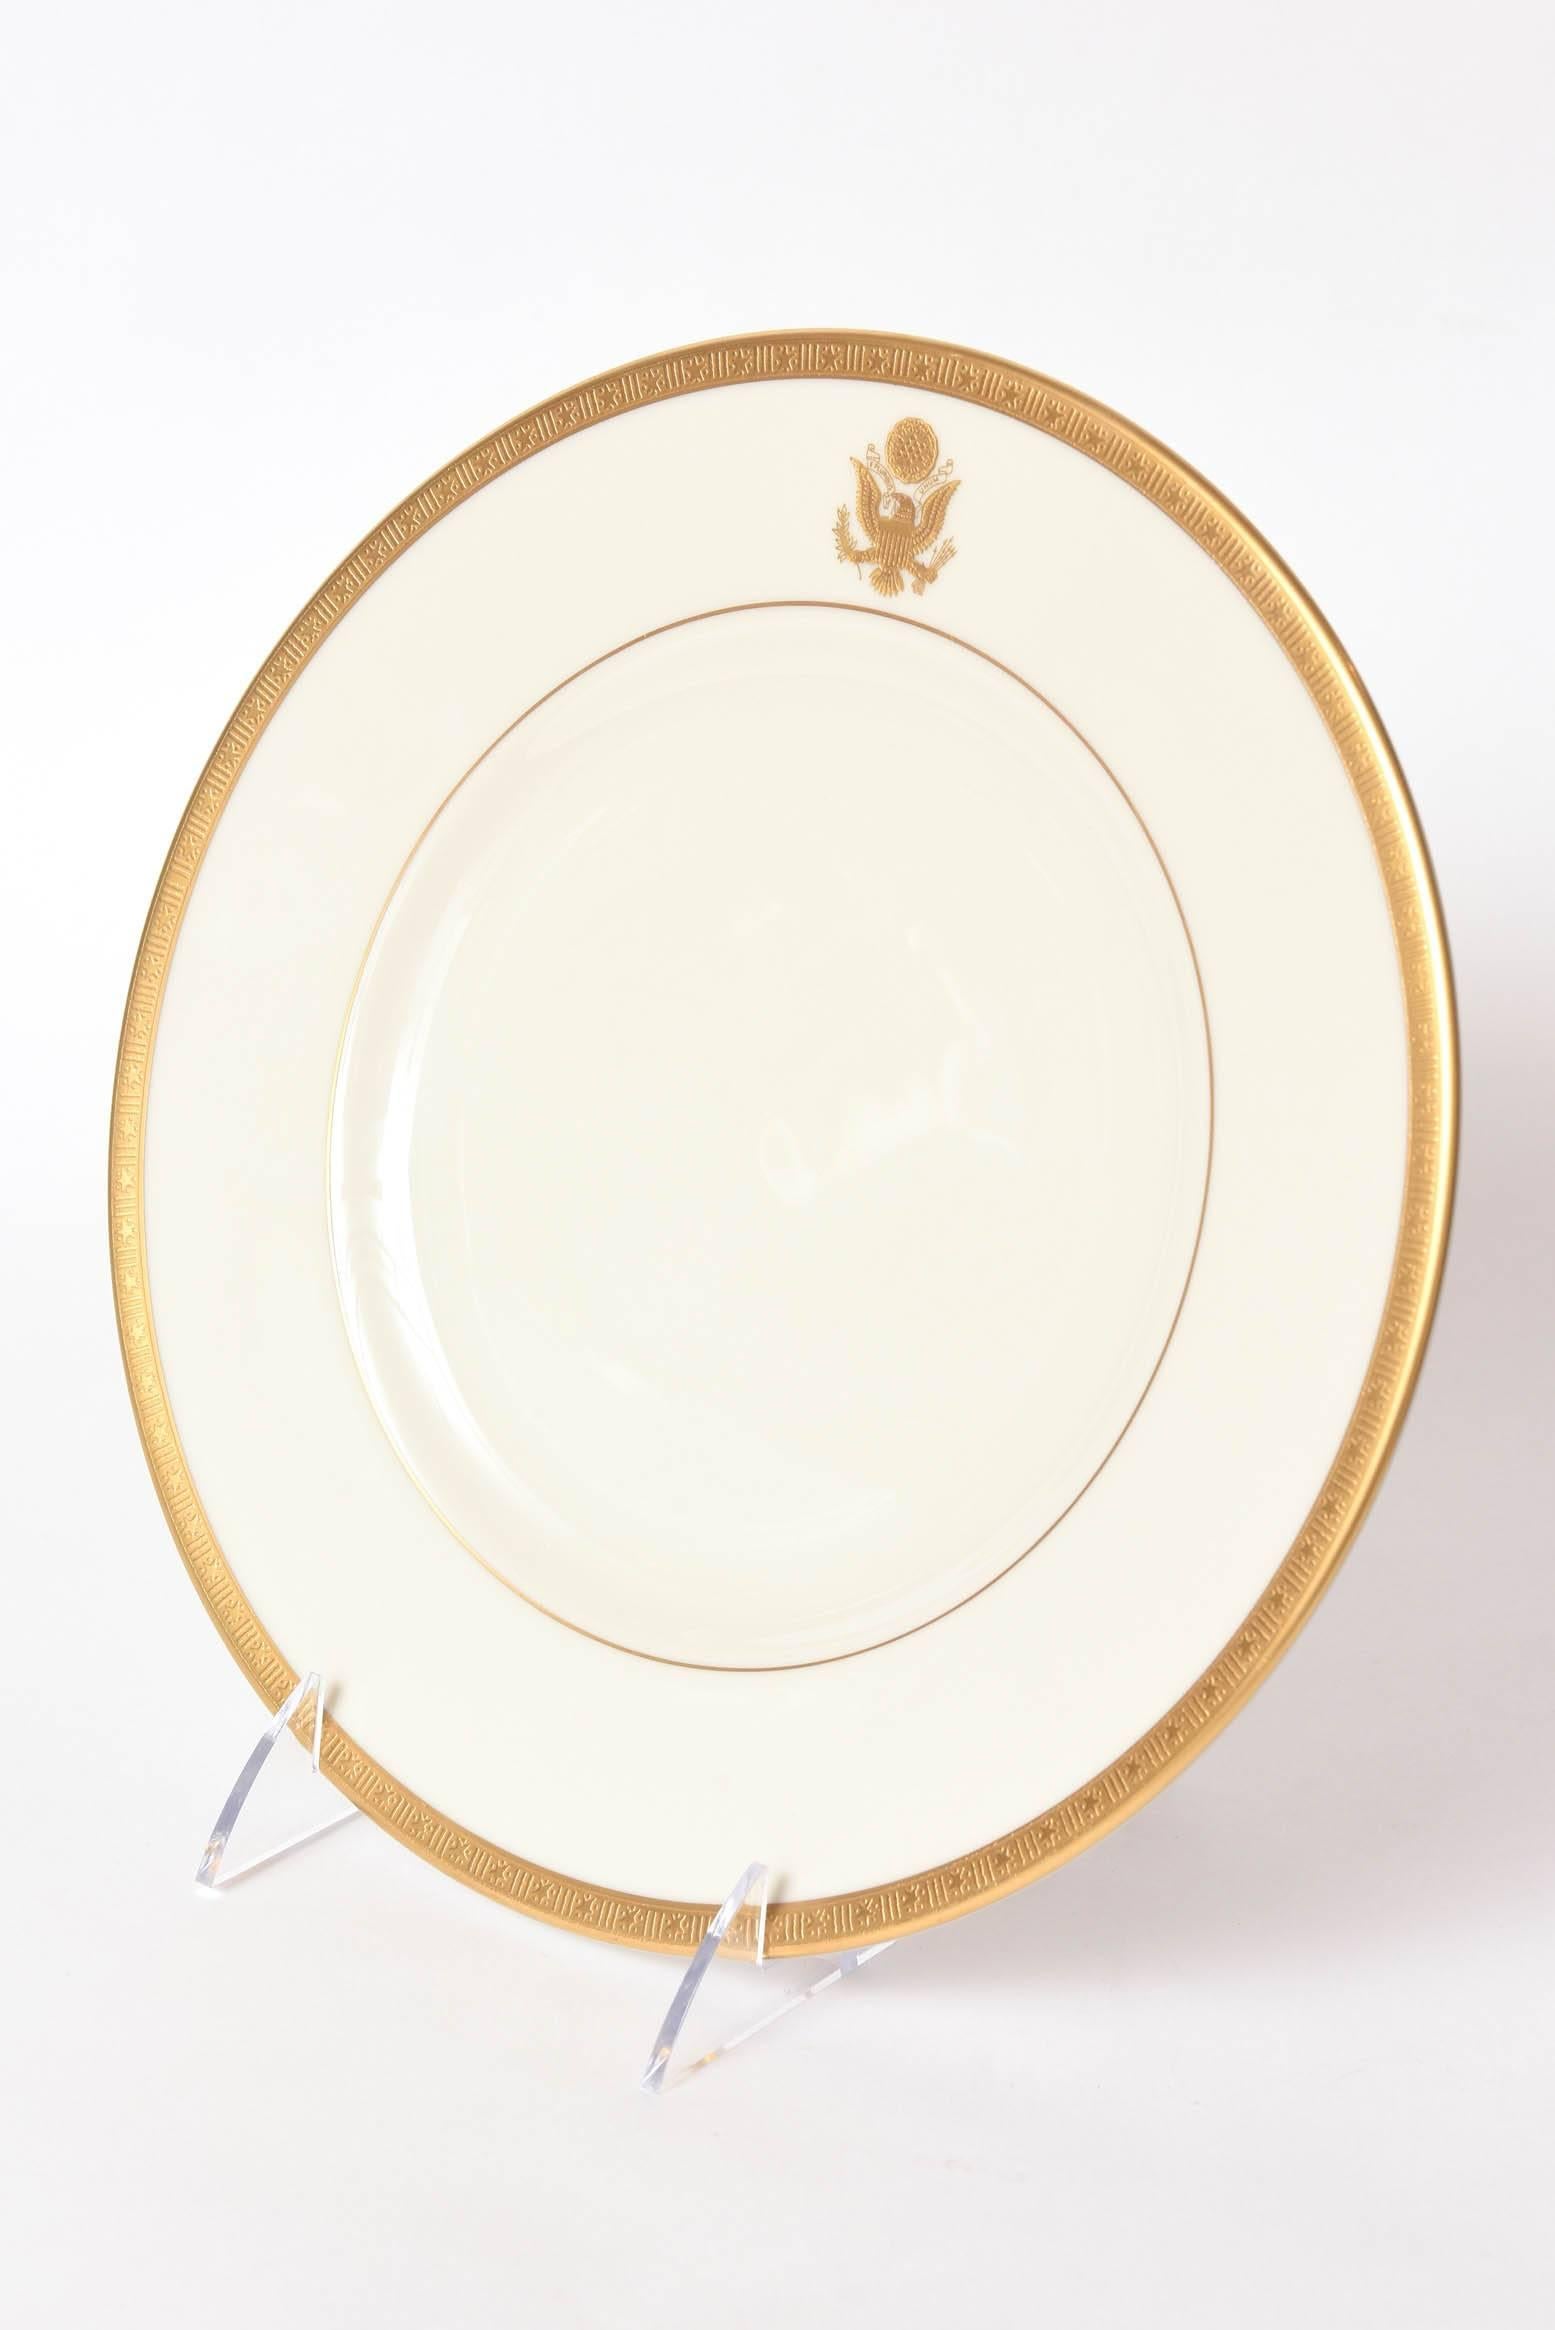 presidential dinner plates